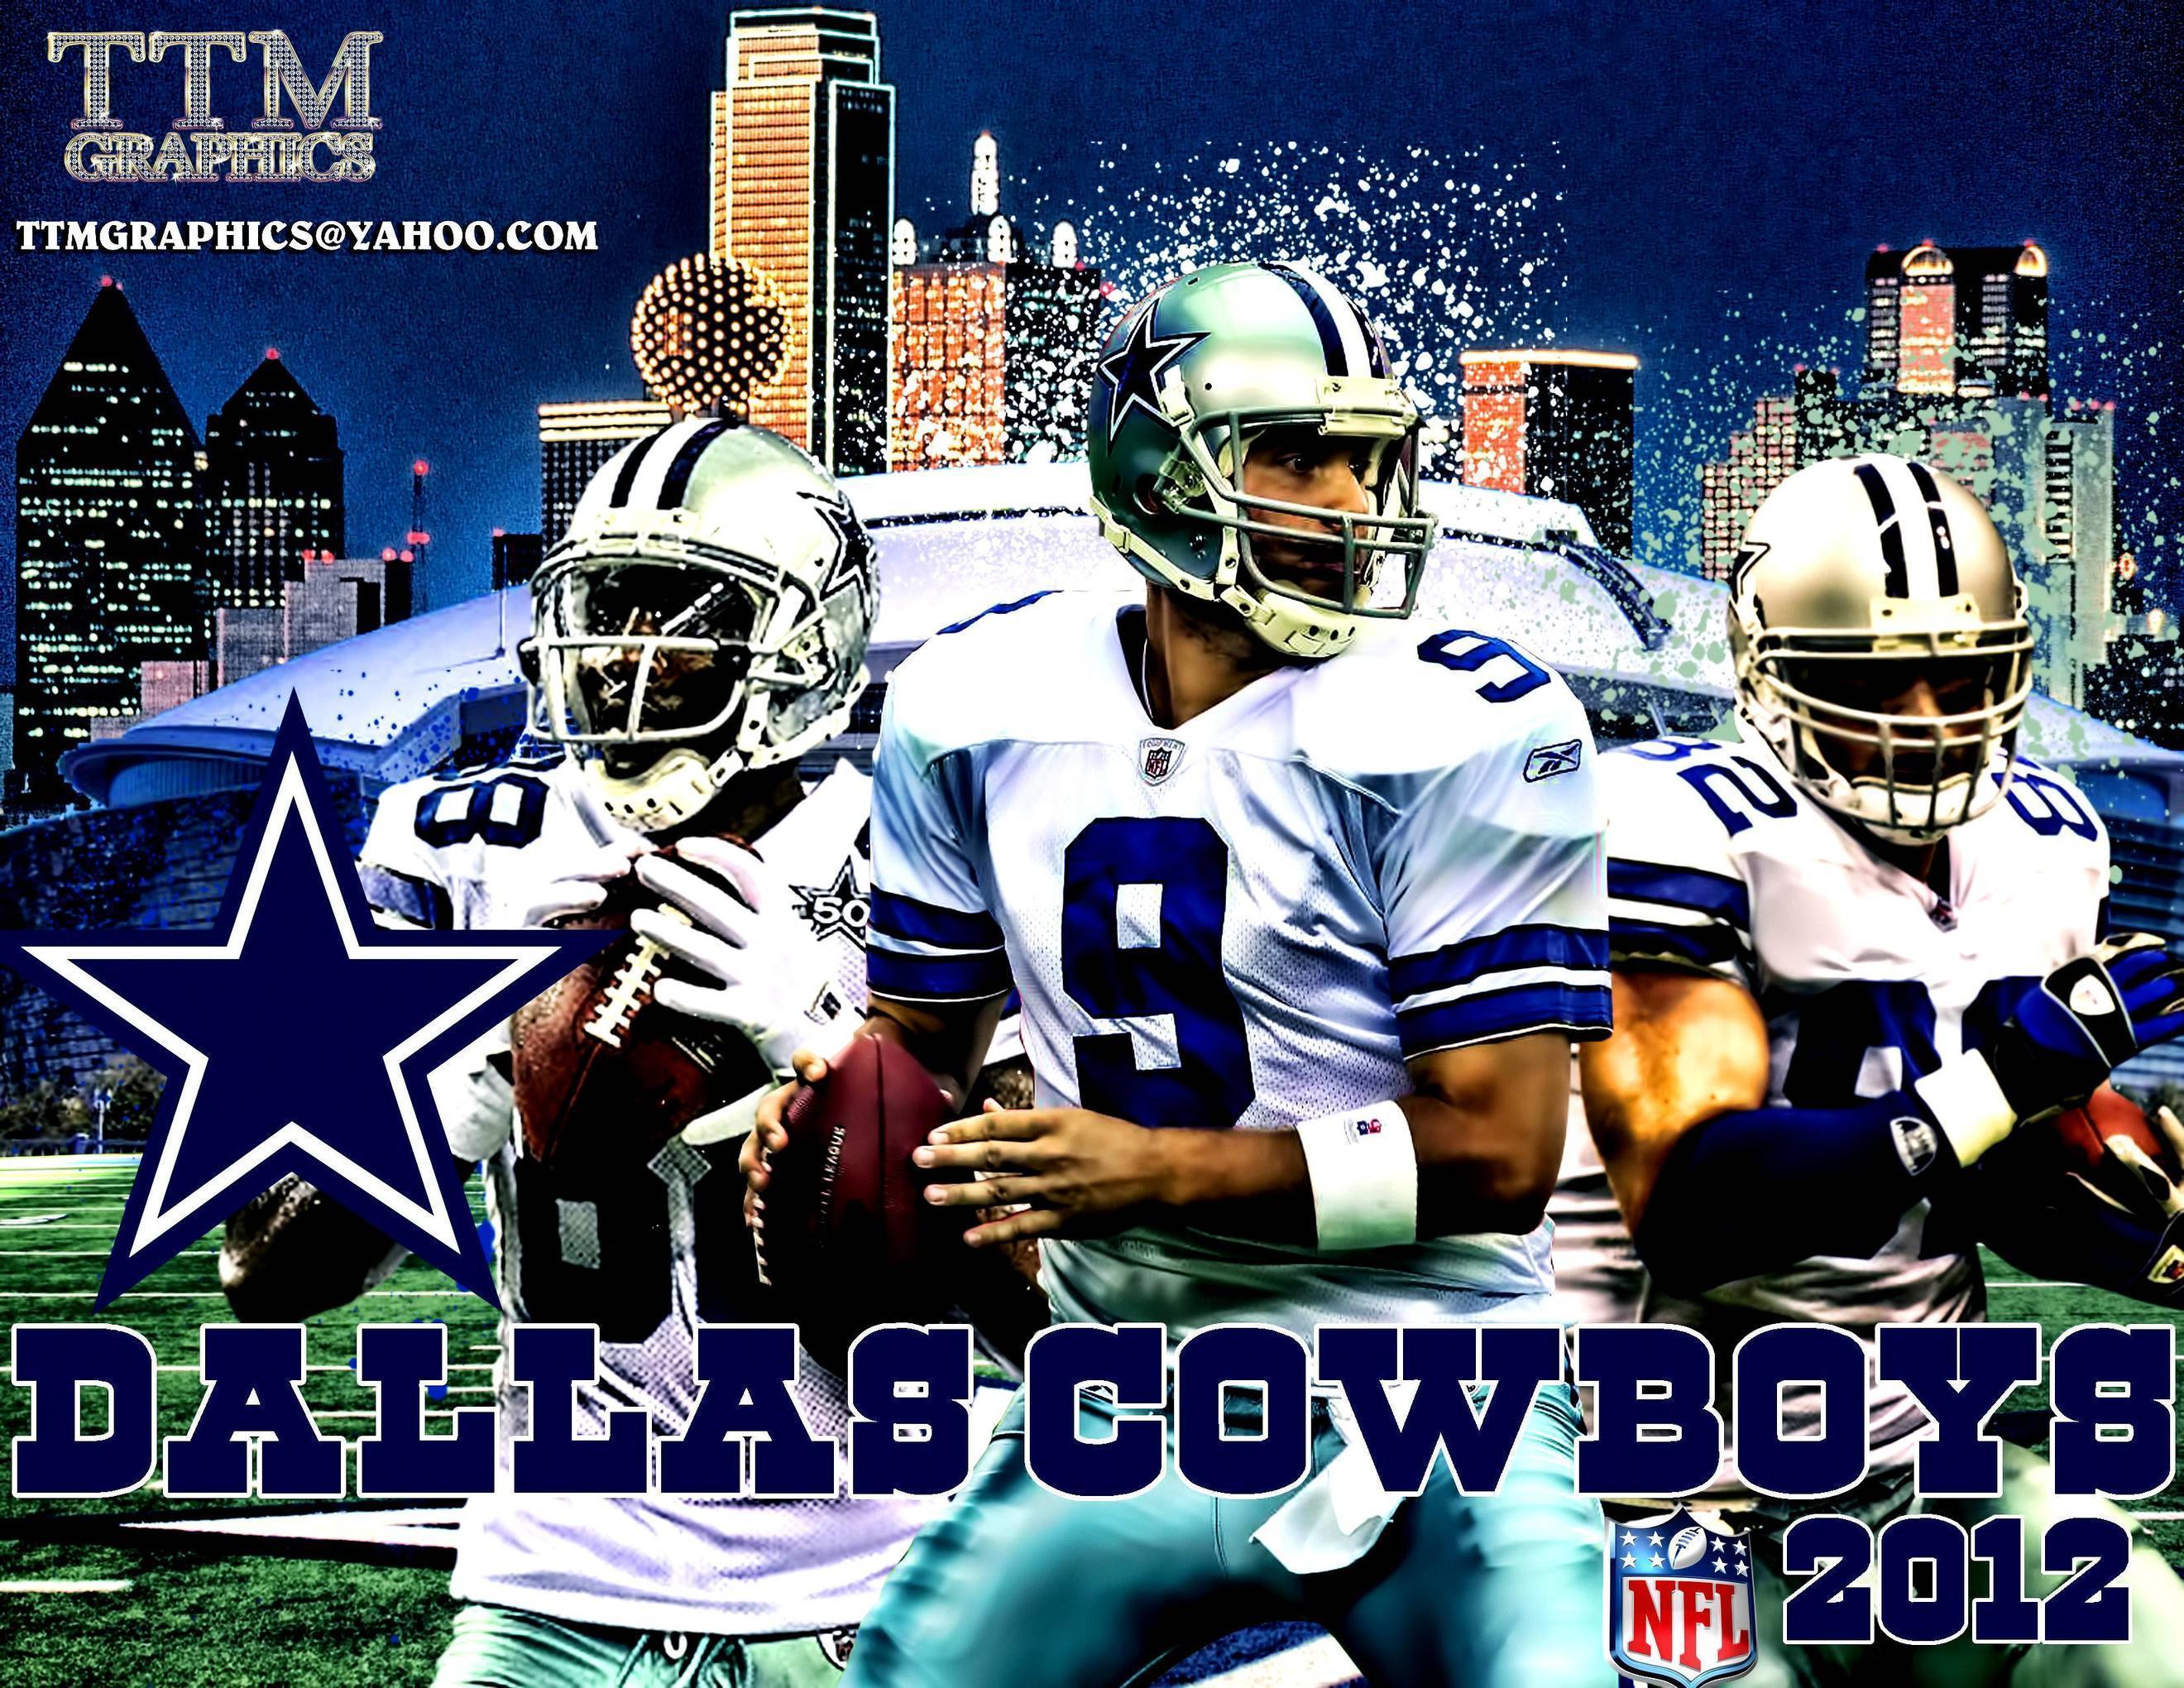 Dallas Cowboys Image Wallpaper